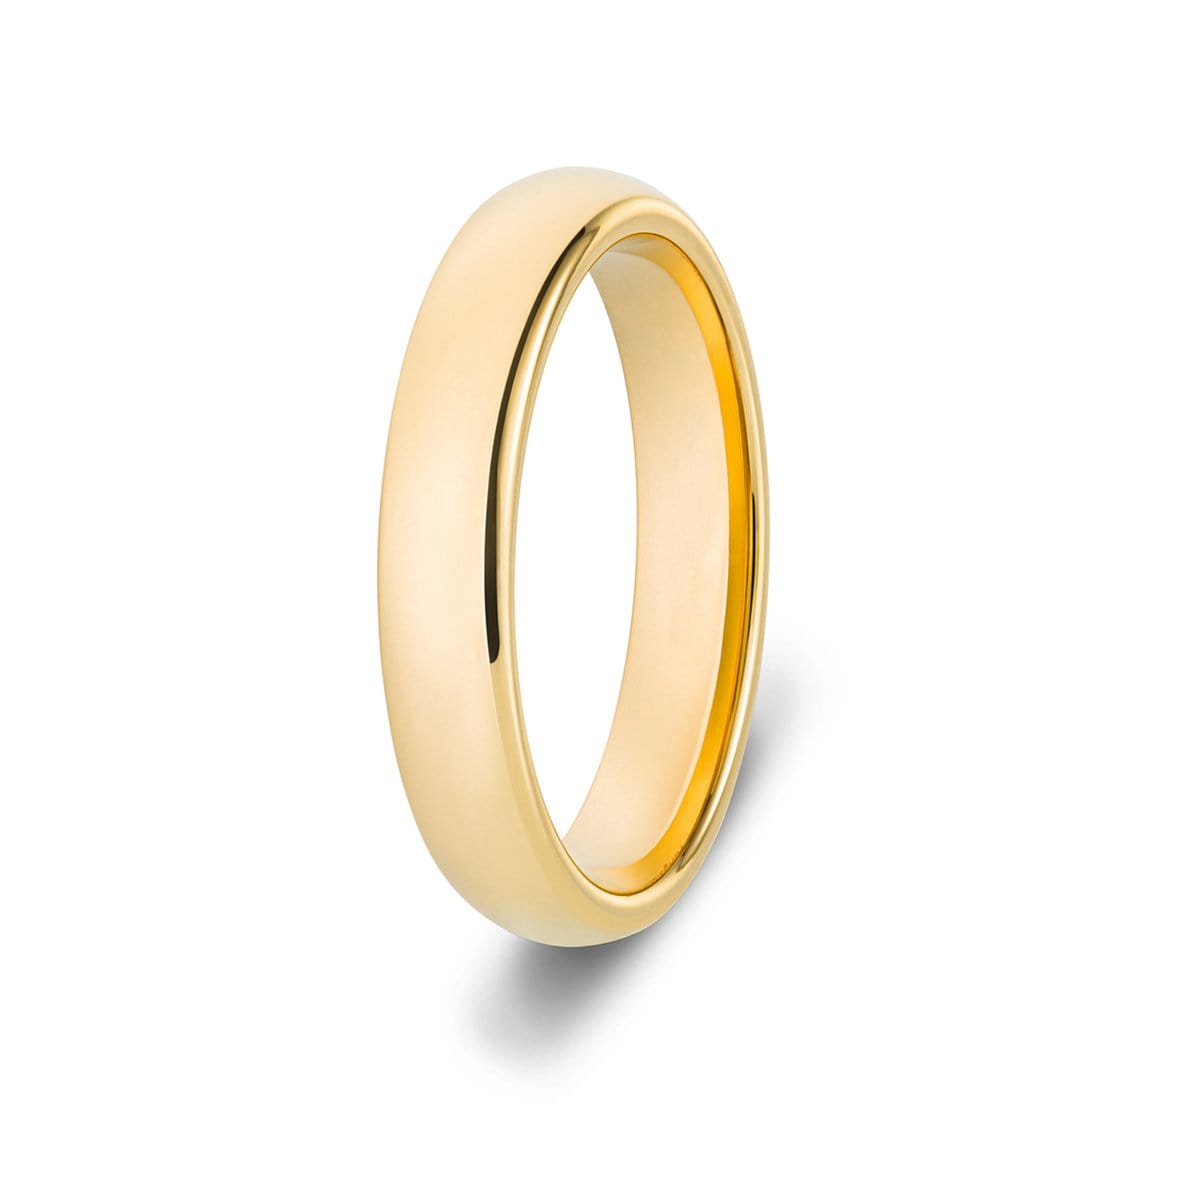 Designer Tiara Plain Gold Band Ring at Best Price in Kota | Shree Jain  Jewellers